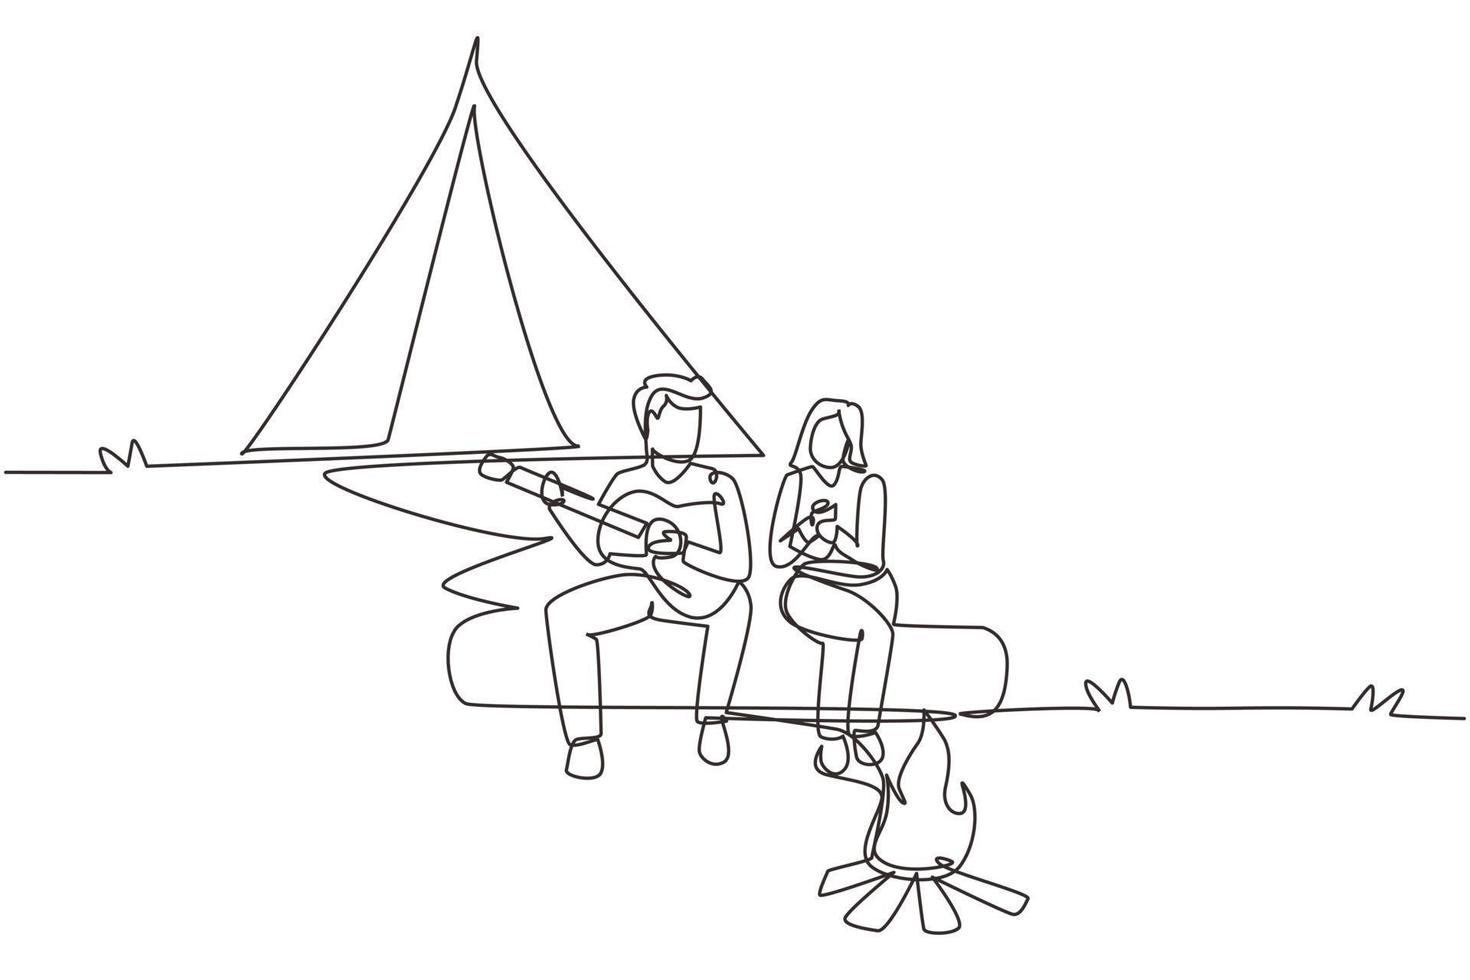 un unico disegno a tratteggio coppia escursionisti seduti sul tronco di legno vicino al fuoco nella foresta. donna che beve tè caldo, uomo che suona la chitarra, attrezzatura da campeggio e zaino. vettore grafico di disegno di linea continua